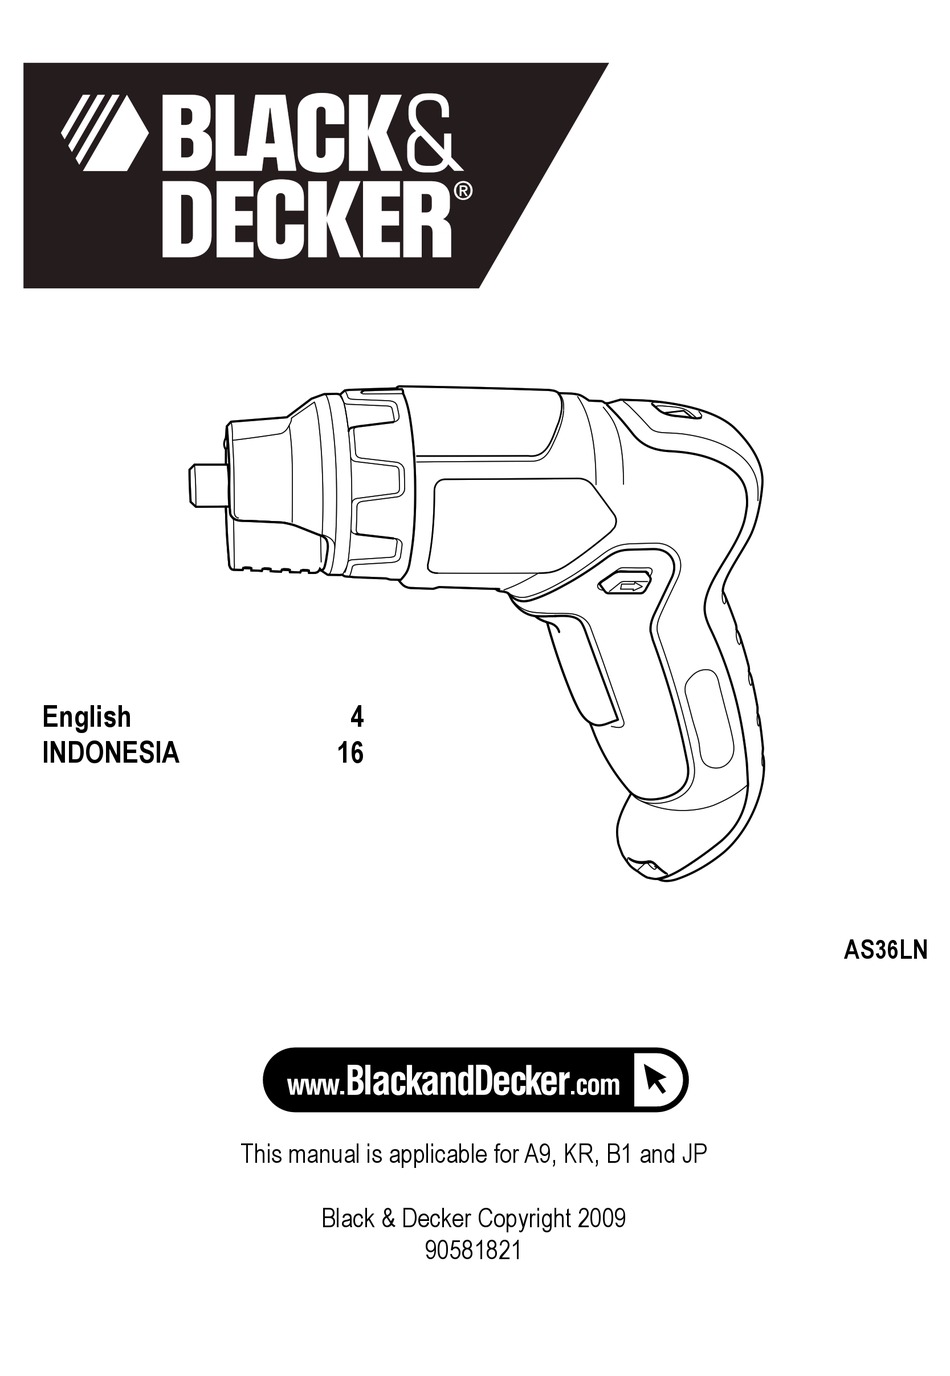 BLACK & DECKER PIVOT DRIVER PP360 USER MANUAL Pdf Download